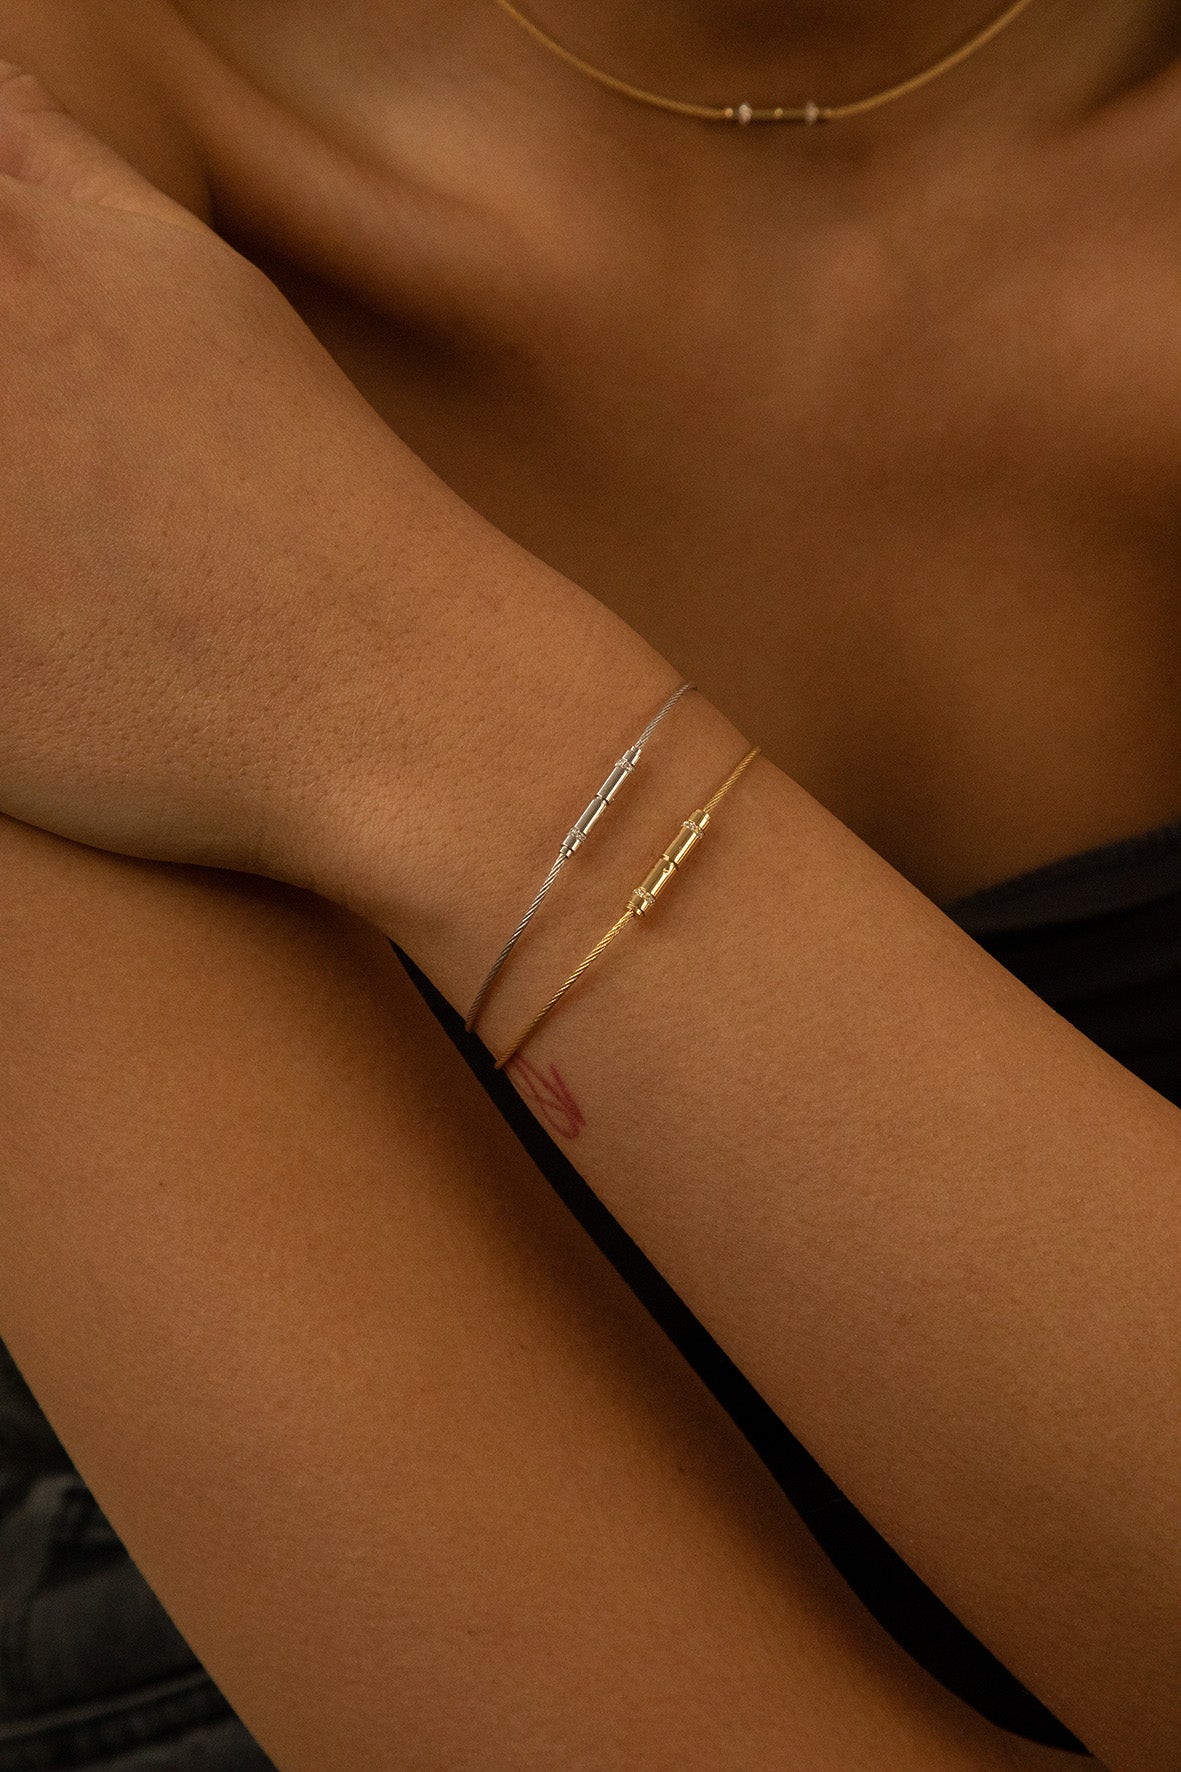 we belong together bold bracelet